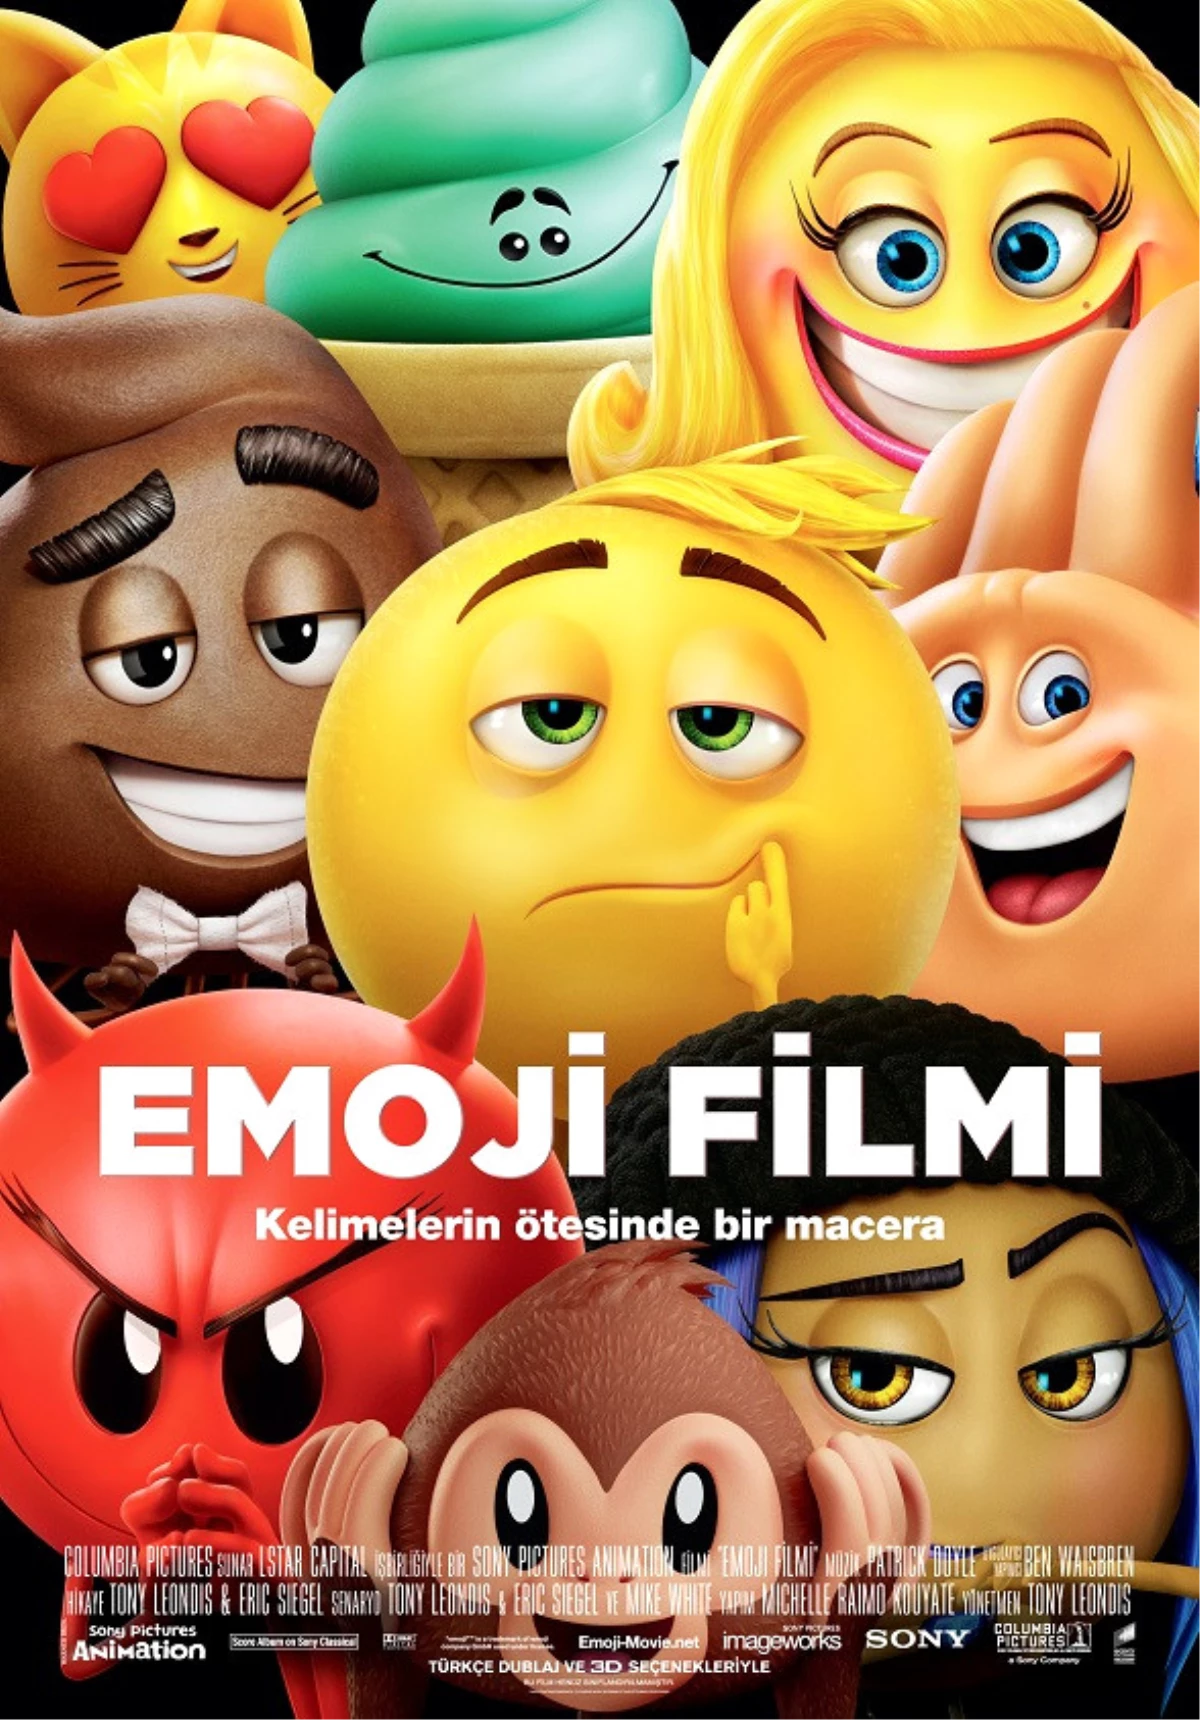 "Emoji Filmi 8 Eylül\'de Sinemalarda